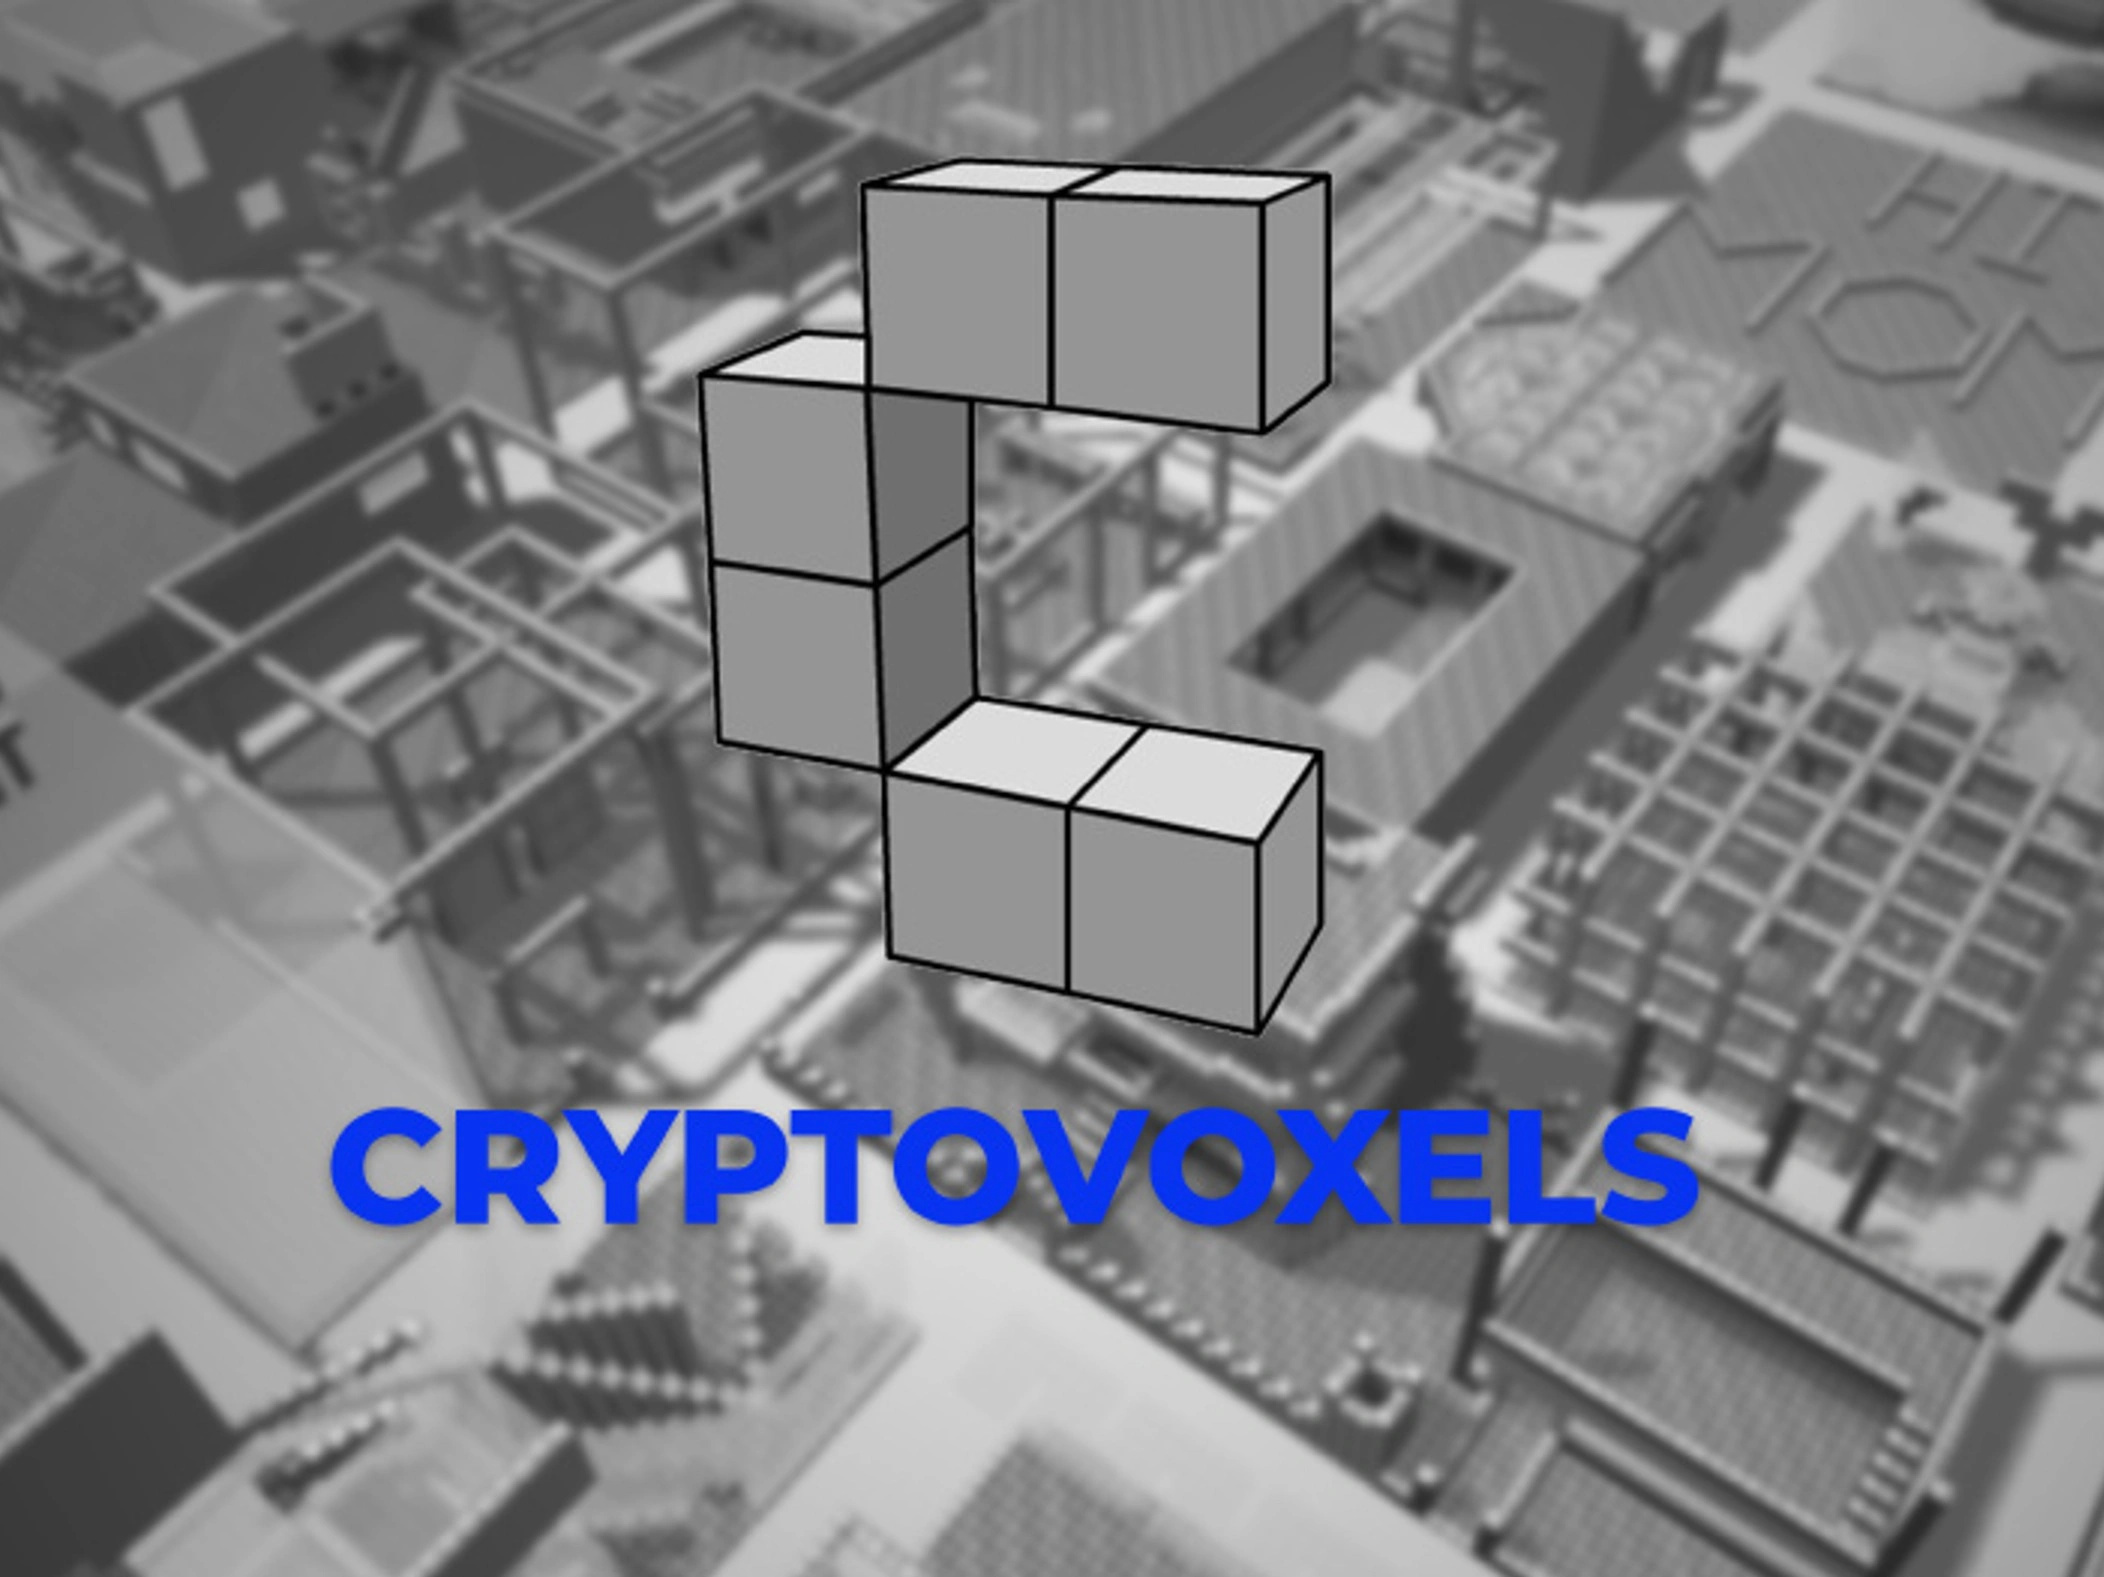 Cryptovoxels